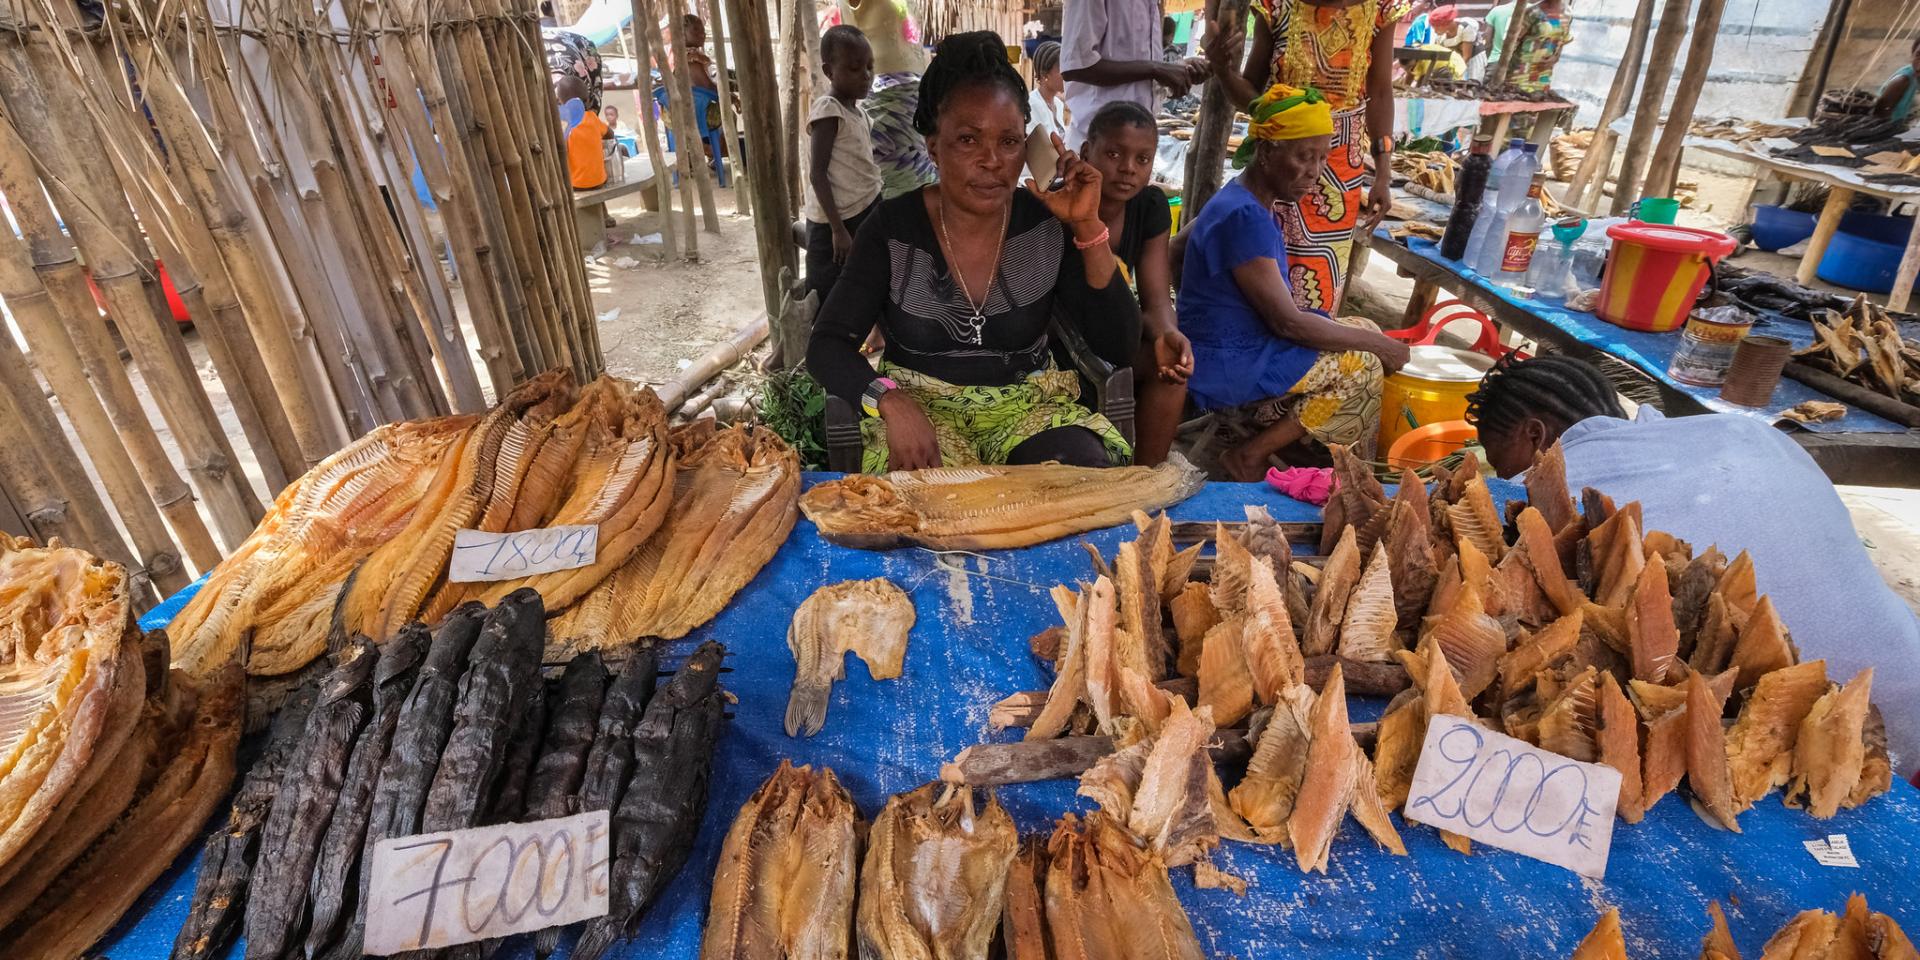 Woman seller in market in DRC. CIFOR.